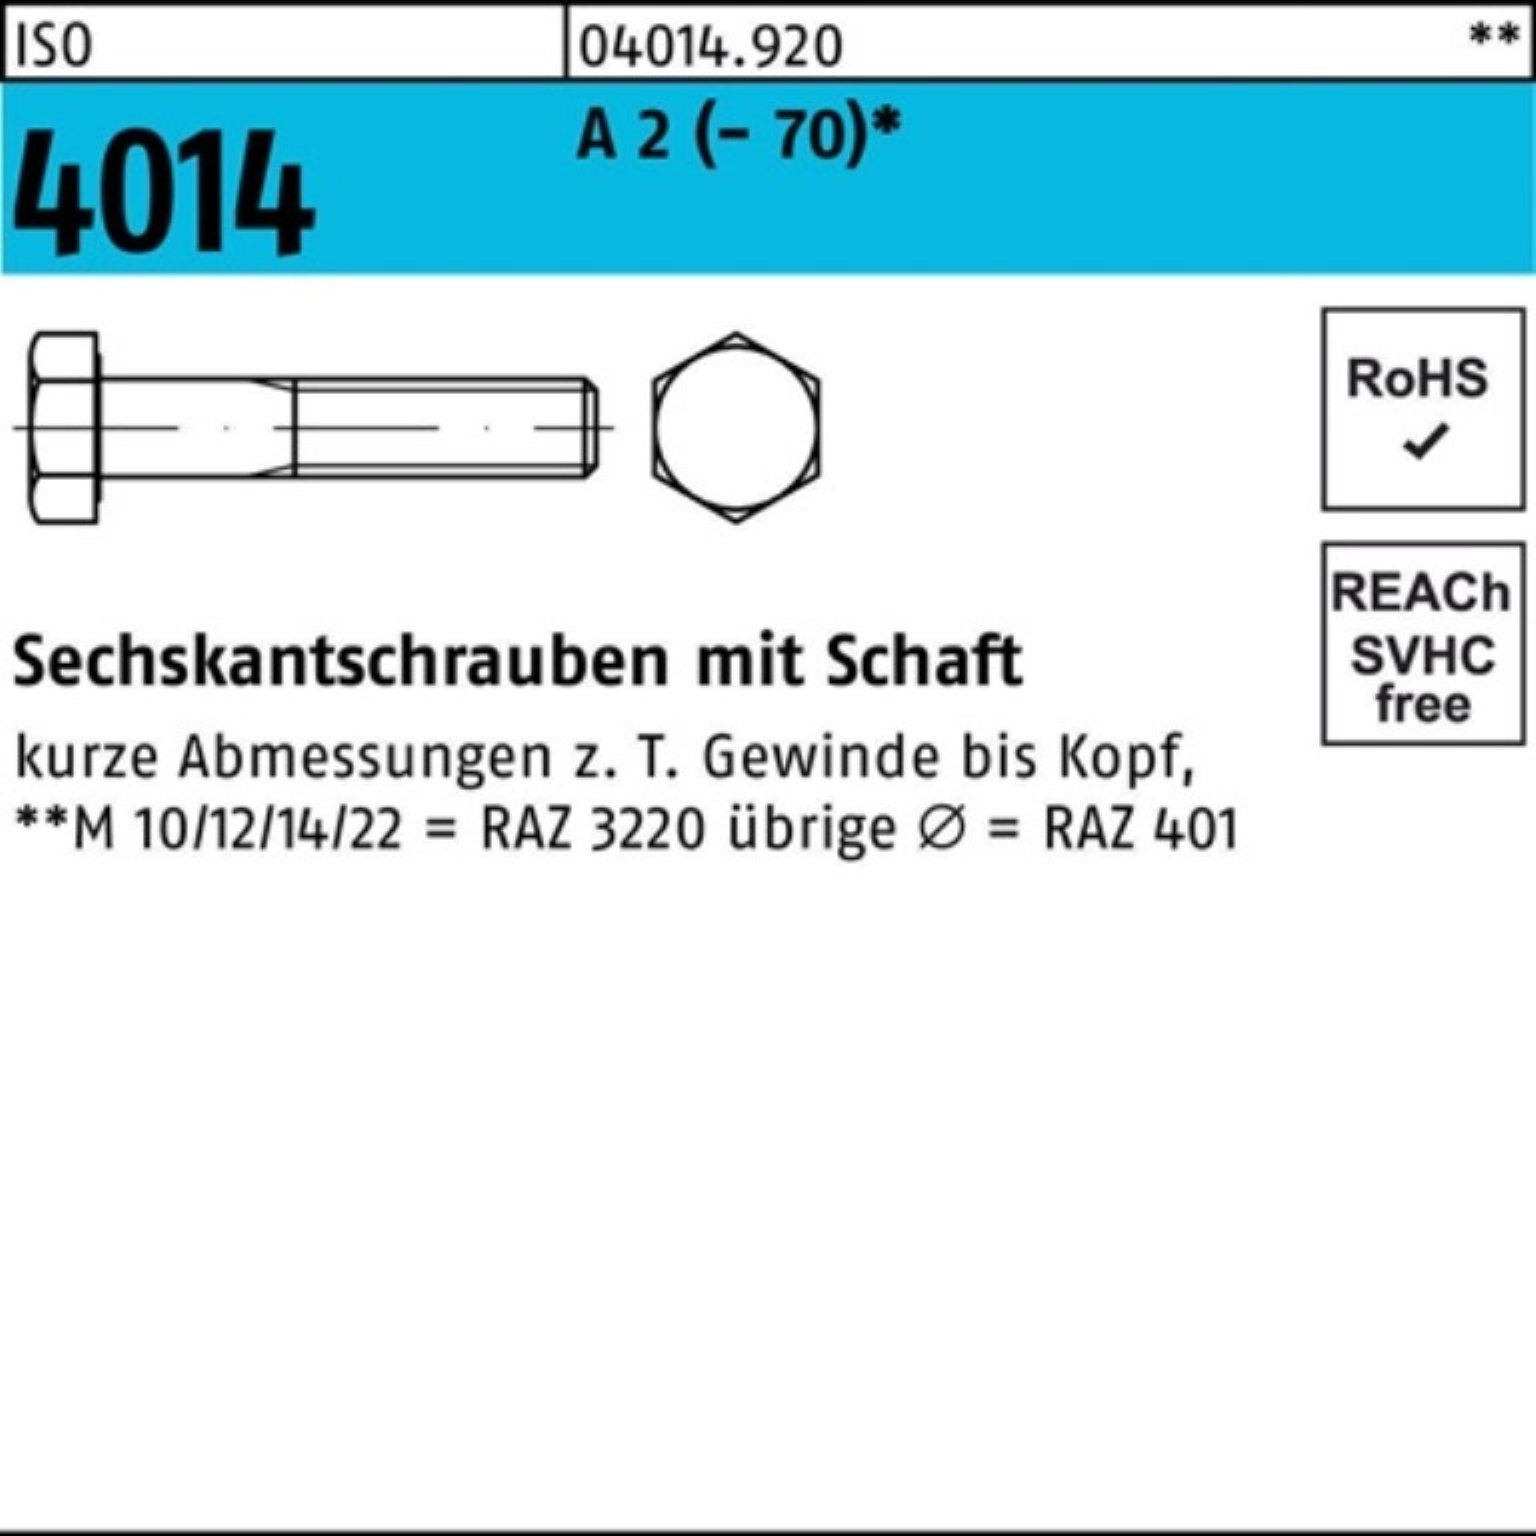 Bufab Sechskantschraube 100er Pack Sechskantschraube ISO 4014 Schaft M10x 140 A 2 (70) 50 St